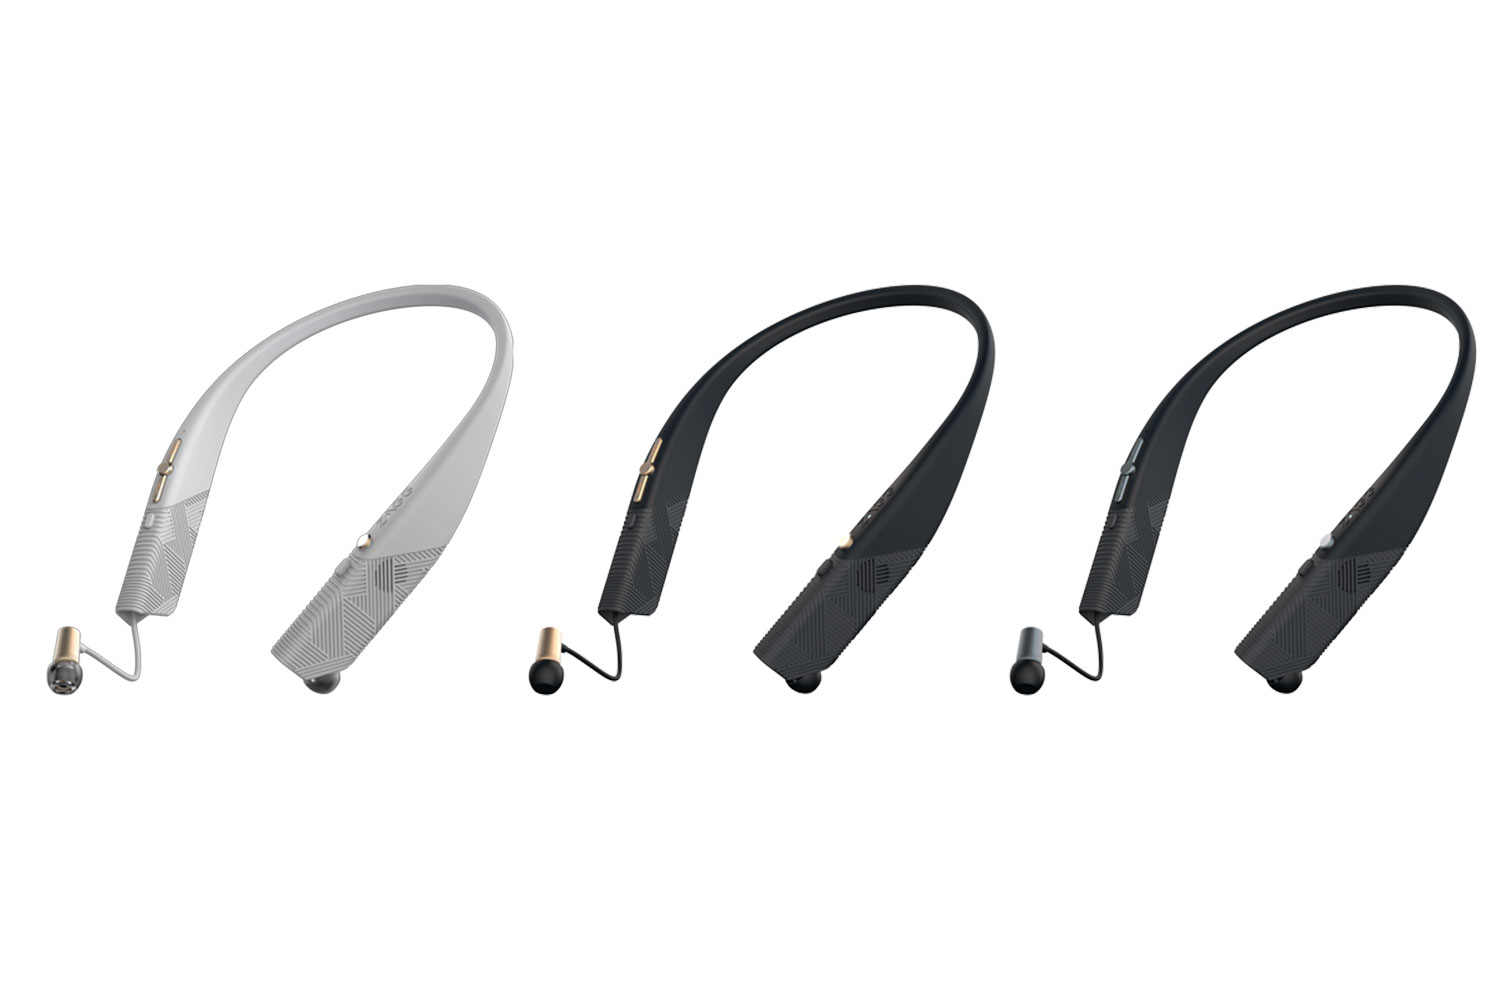 flex arc wireless headset ces 2016 zagg earbuds